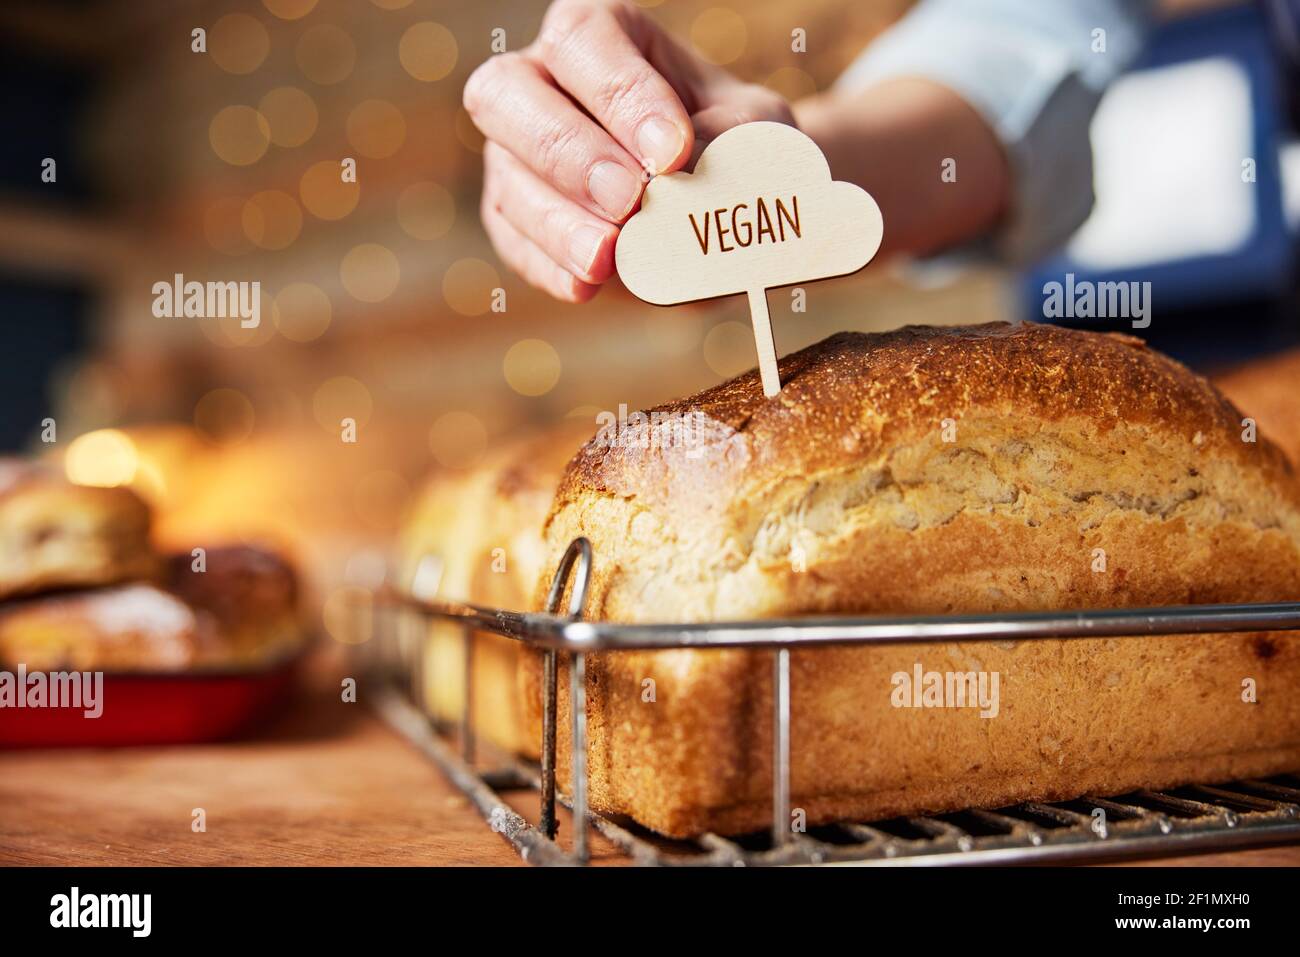 Asistente de ventas en panadería poniendo la etiqueta Vegan en recién horneado Panes de masa de calabaza horneados Foto de stock